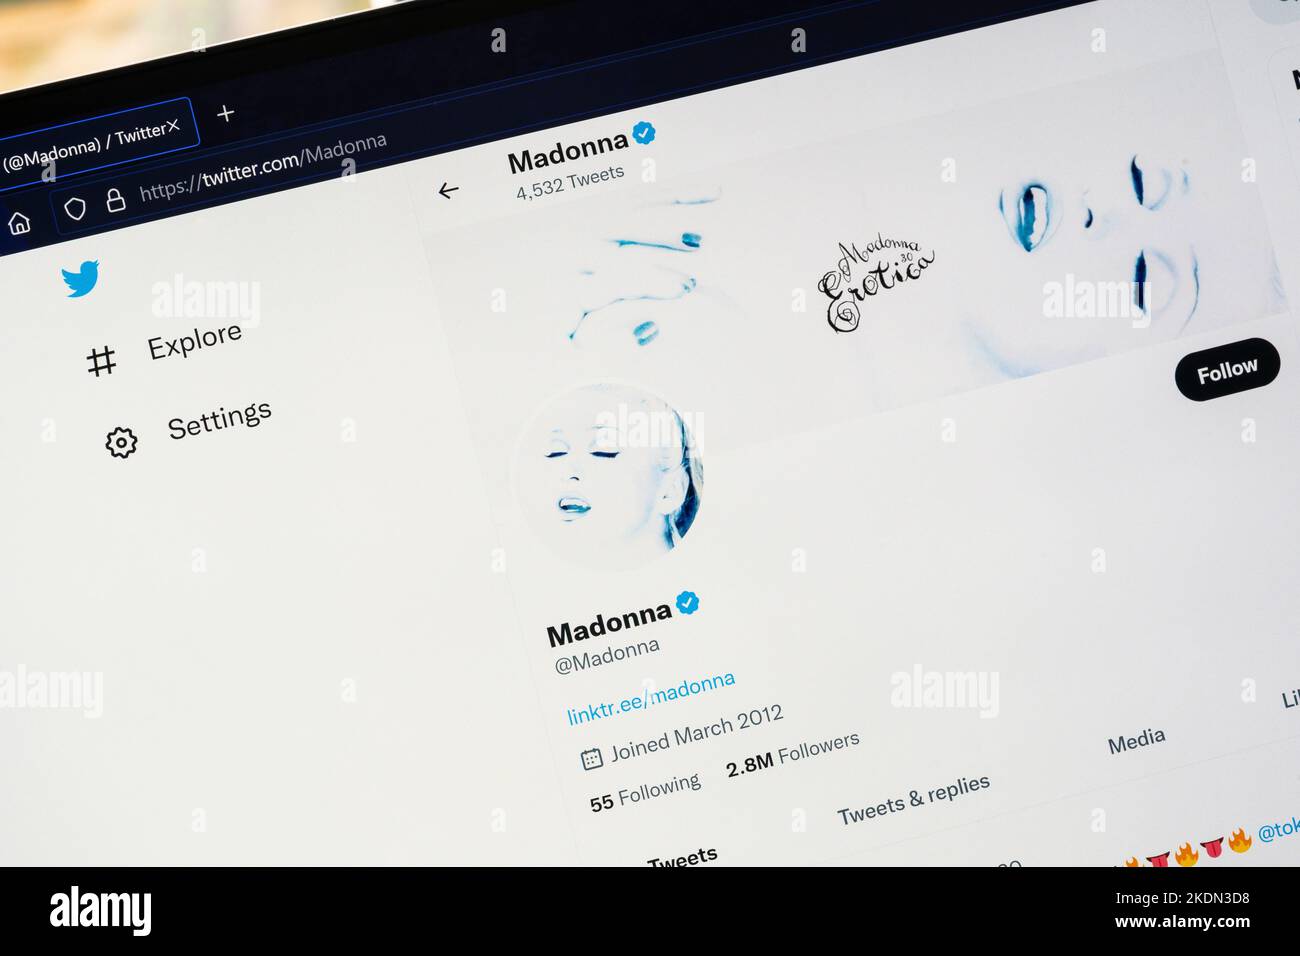 Verifizierte Blue Tick Twitter-Profilseite für Madonna Louise Ciccone ist eine amerikanische Sängerin, Songwriterin und Schauspielerin. Wird als die Königin des Pop bezeichnet. Stockfoto